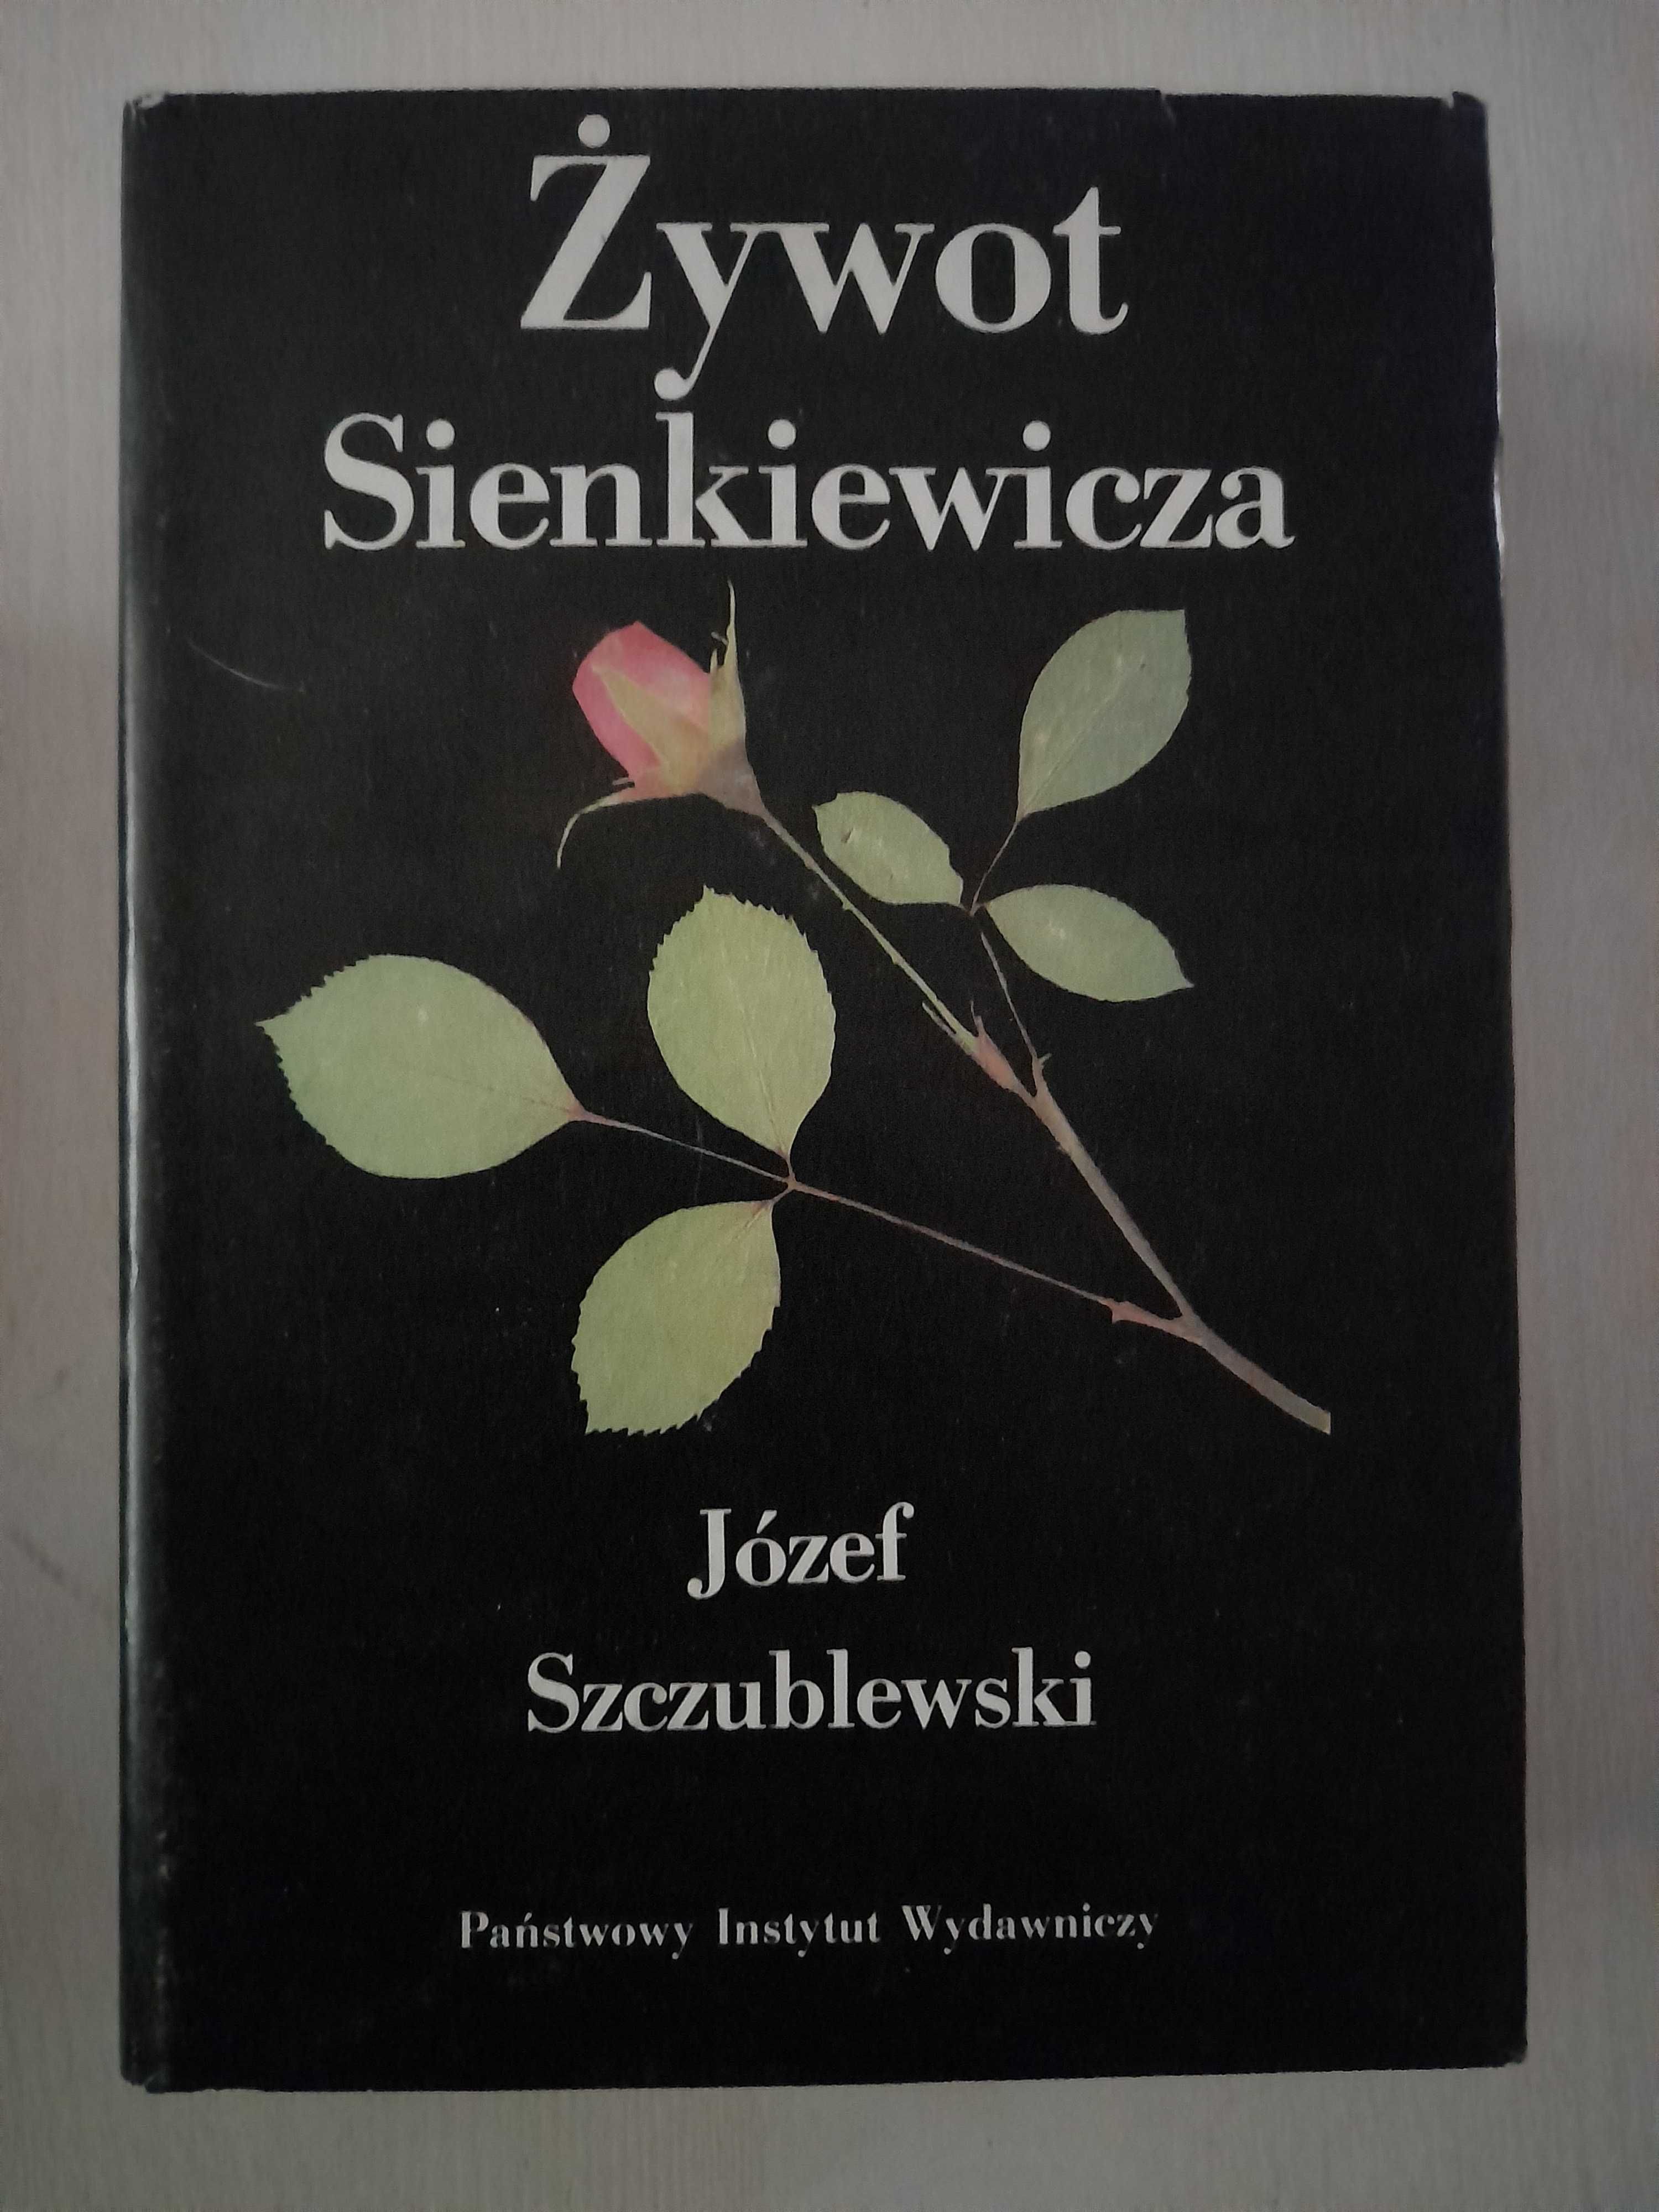 Biografie Żywot Modrzejewskiej, Żywot Sienkiewicza Józef Szczublewski